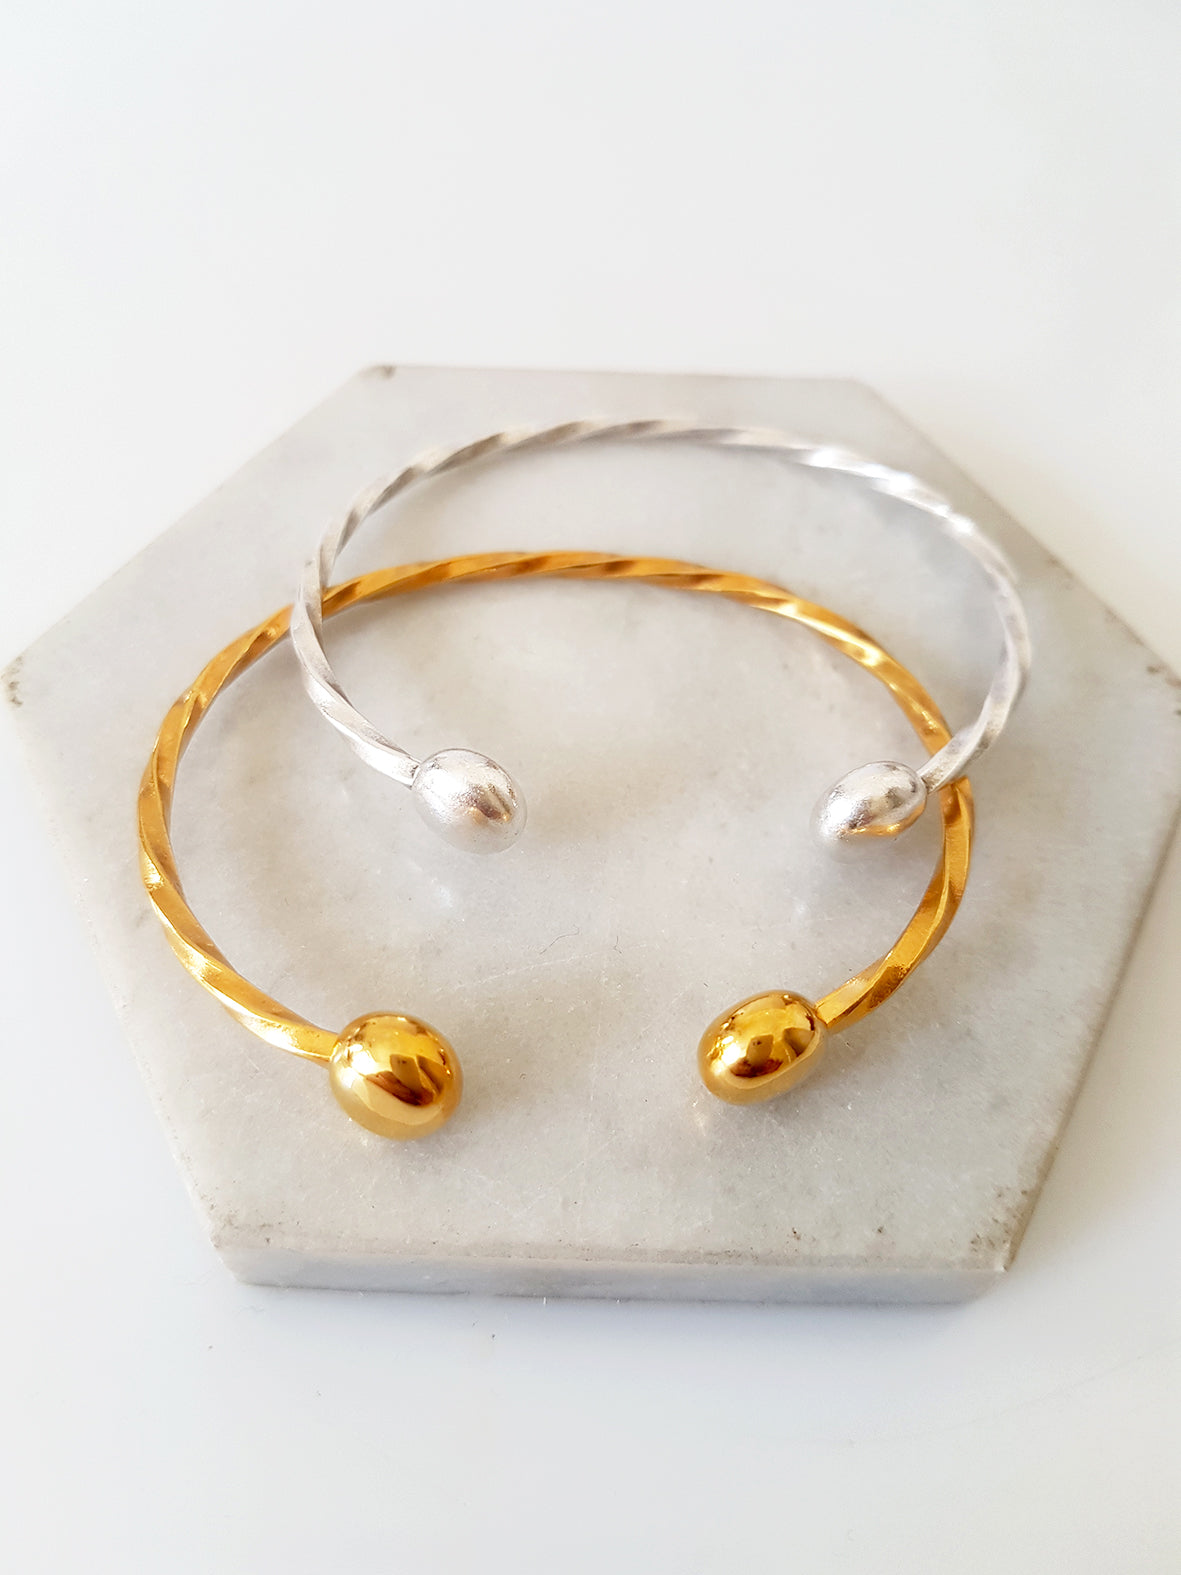 Twisted brass bracelet, package of 3 bracelets - SoCuteb2b